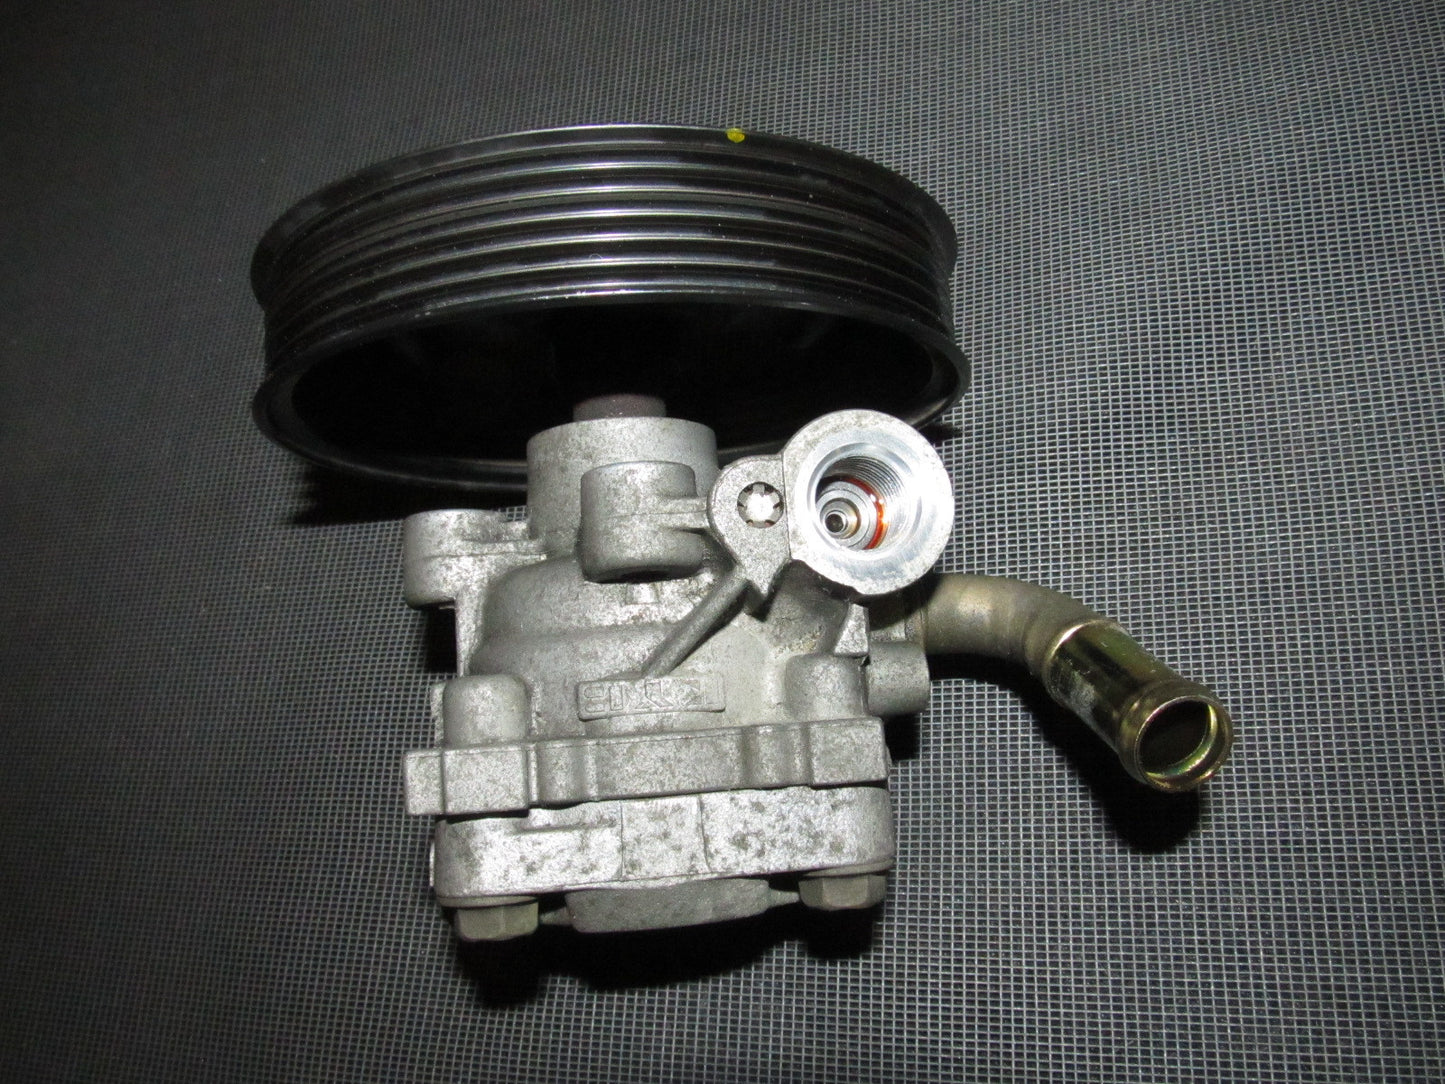 03 04 Infiniti G35 Sedan OEM Power Steering Pump